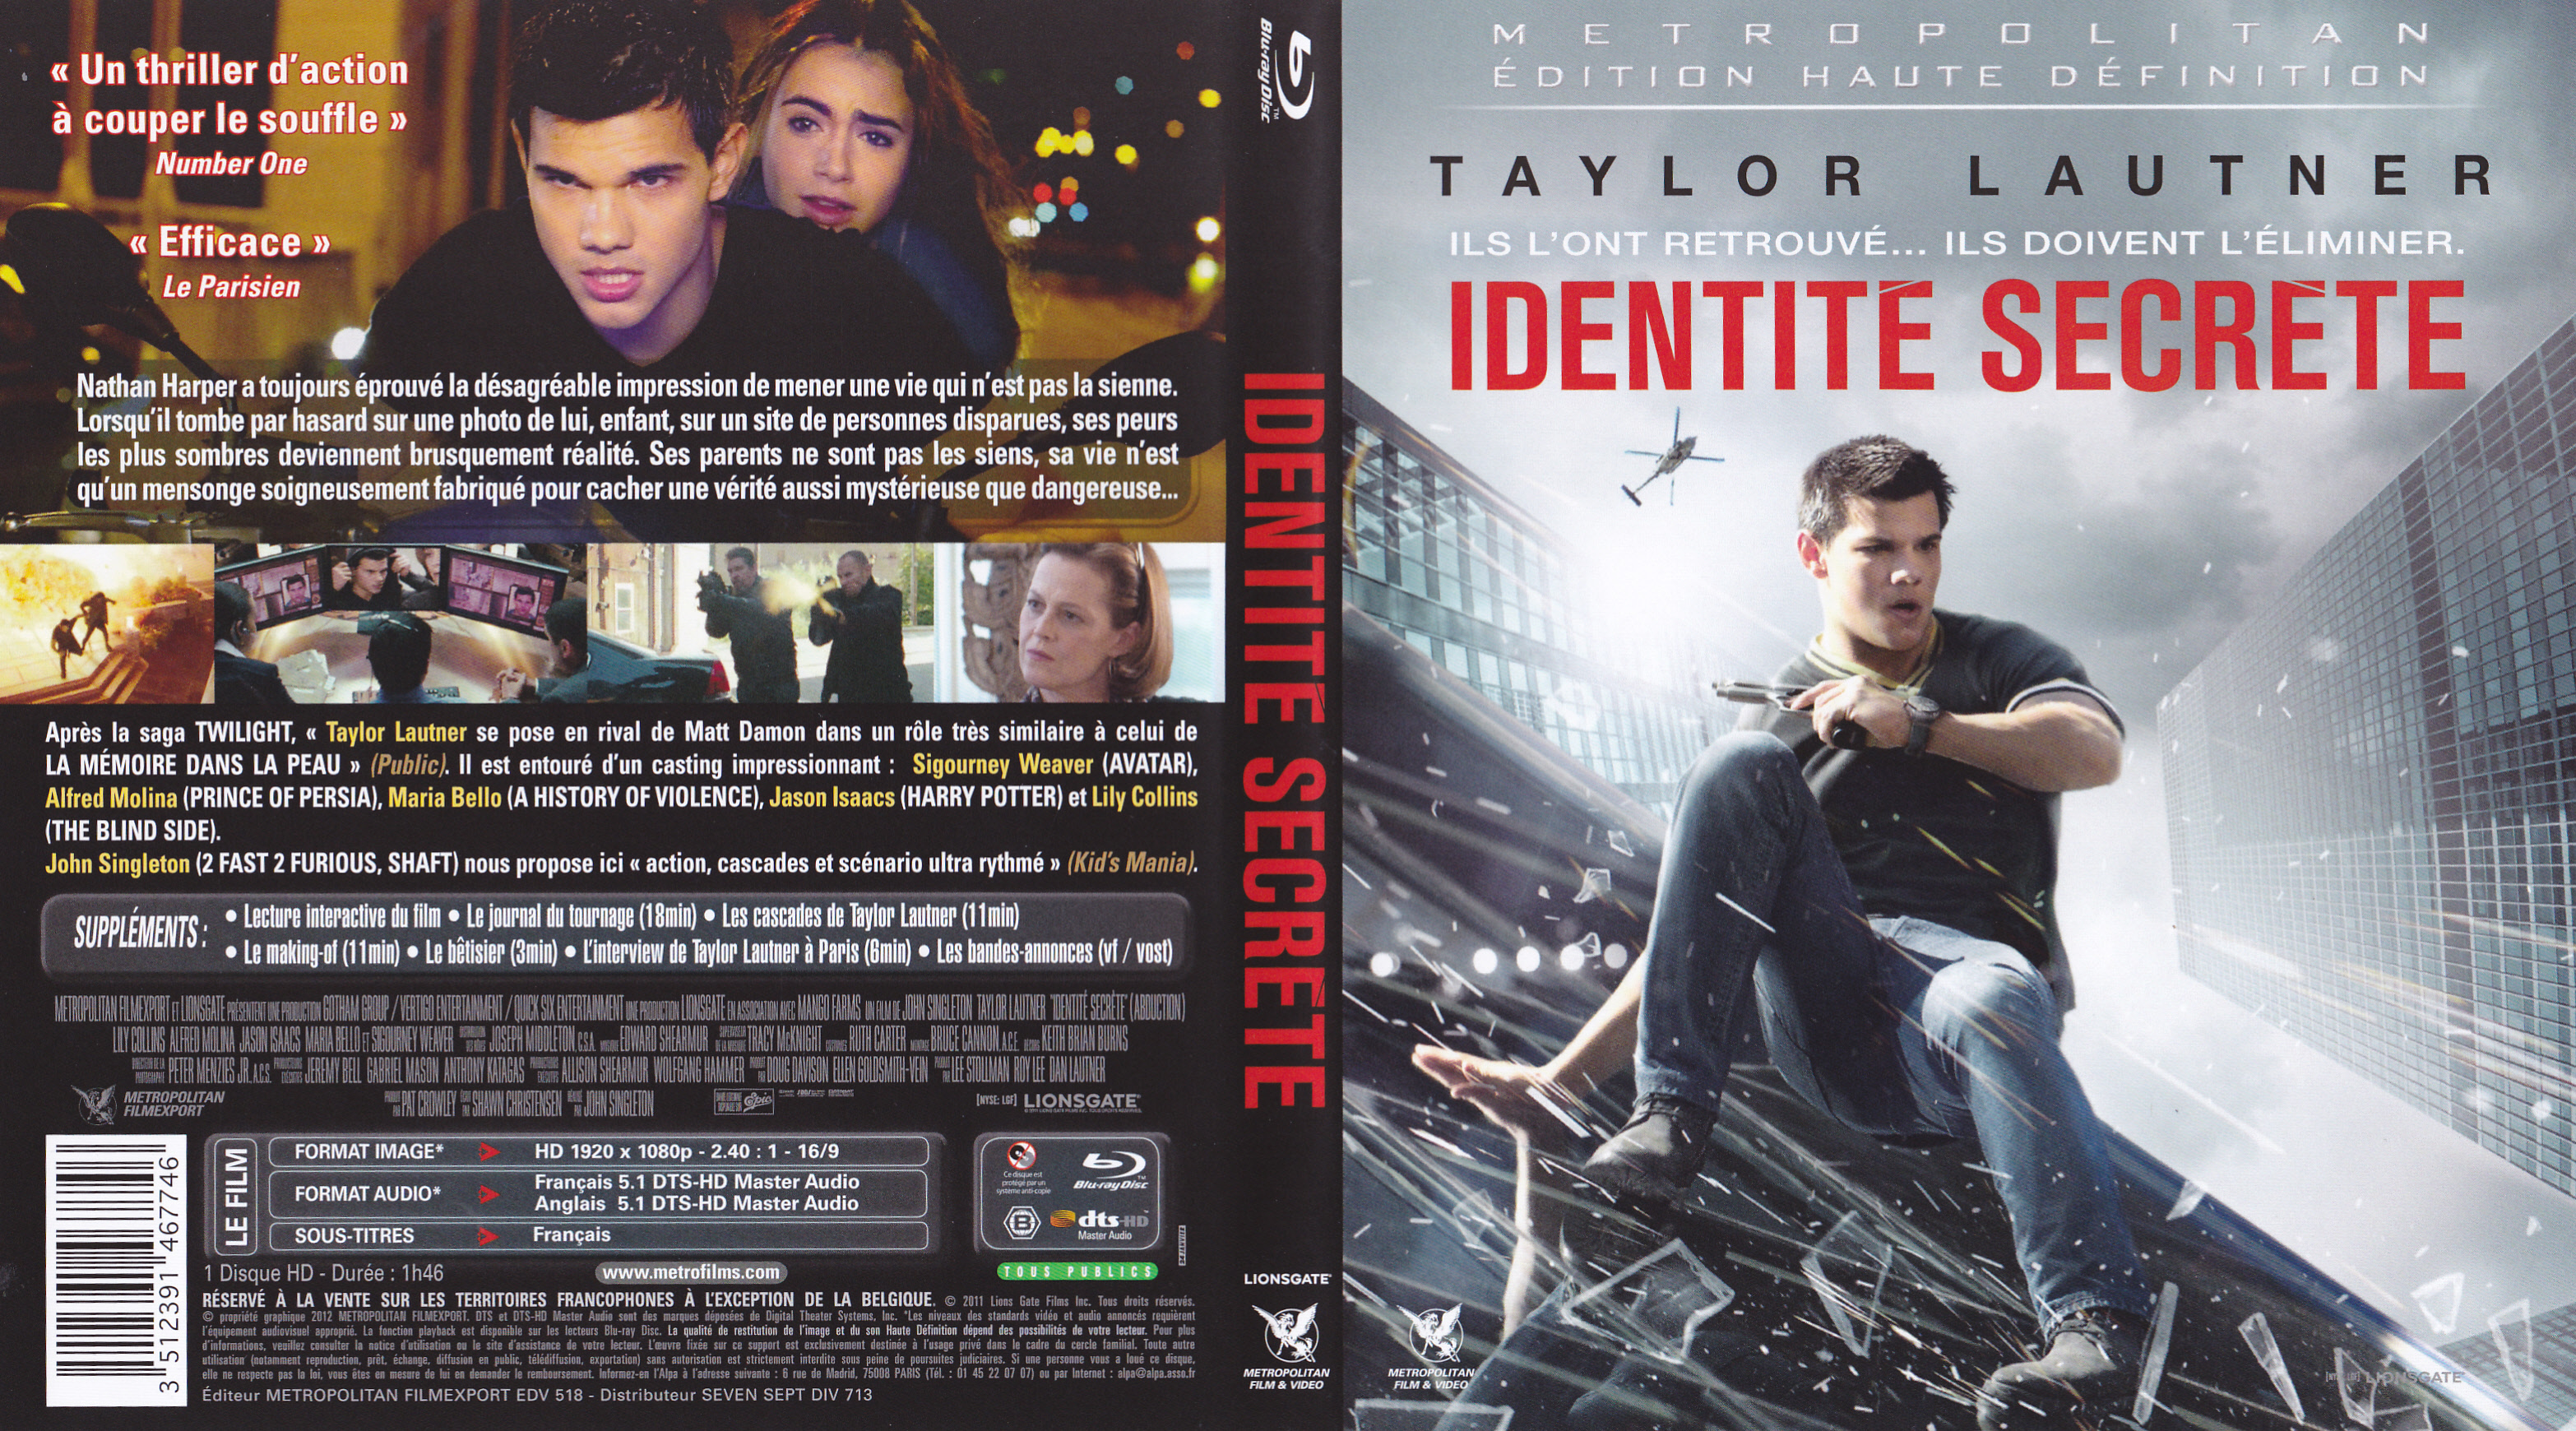 Jaquette DVD Identite Secrete (BLU-RAY)